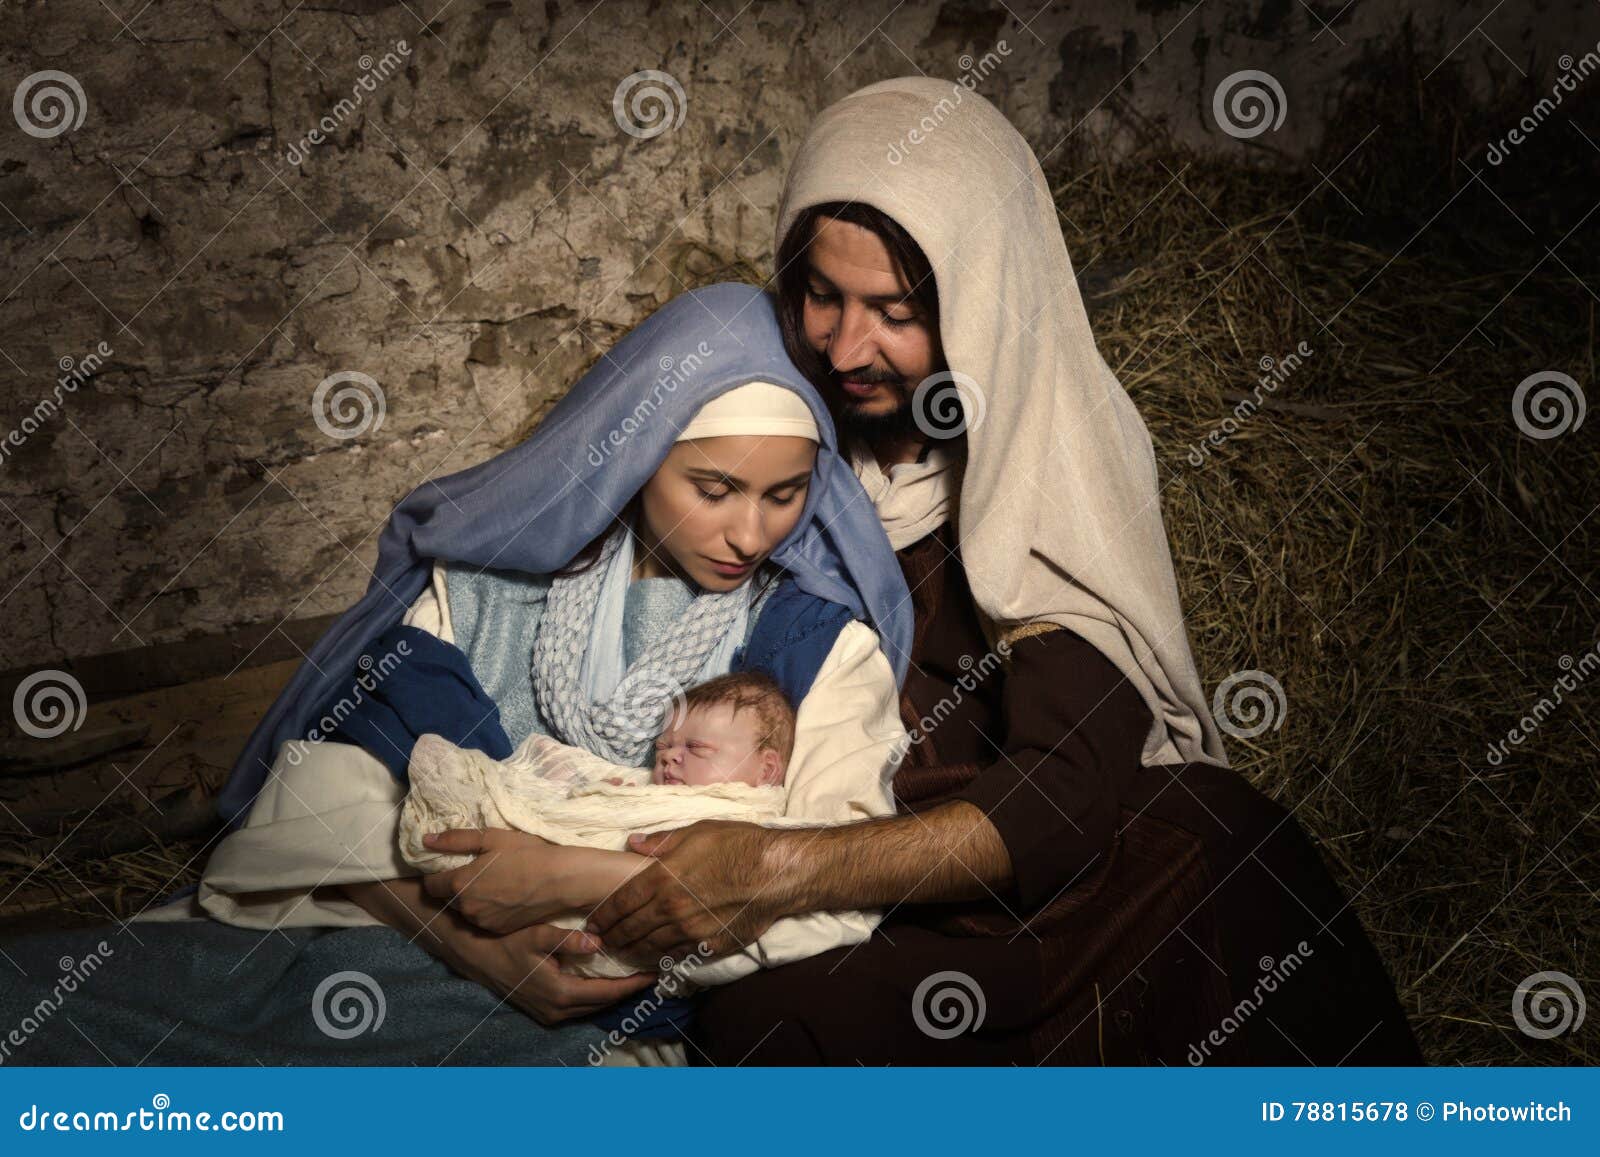 baby jesus in nativity scene